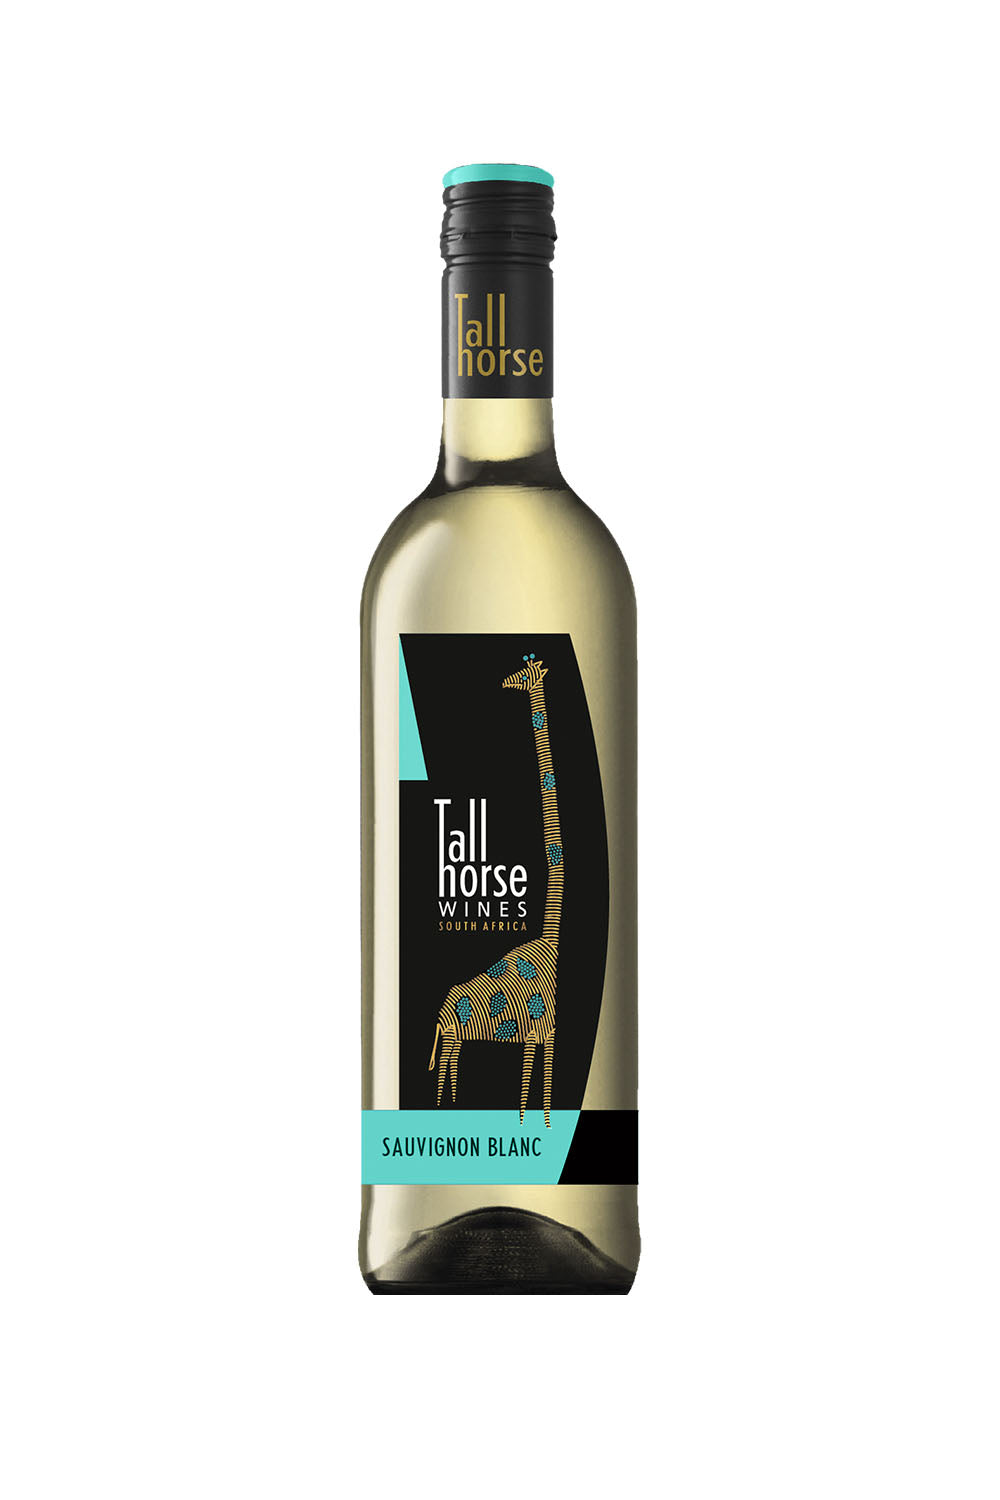 Tall Horse Sauvignon Blanc 2019